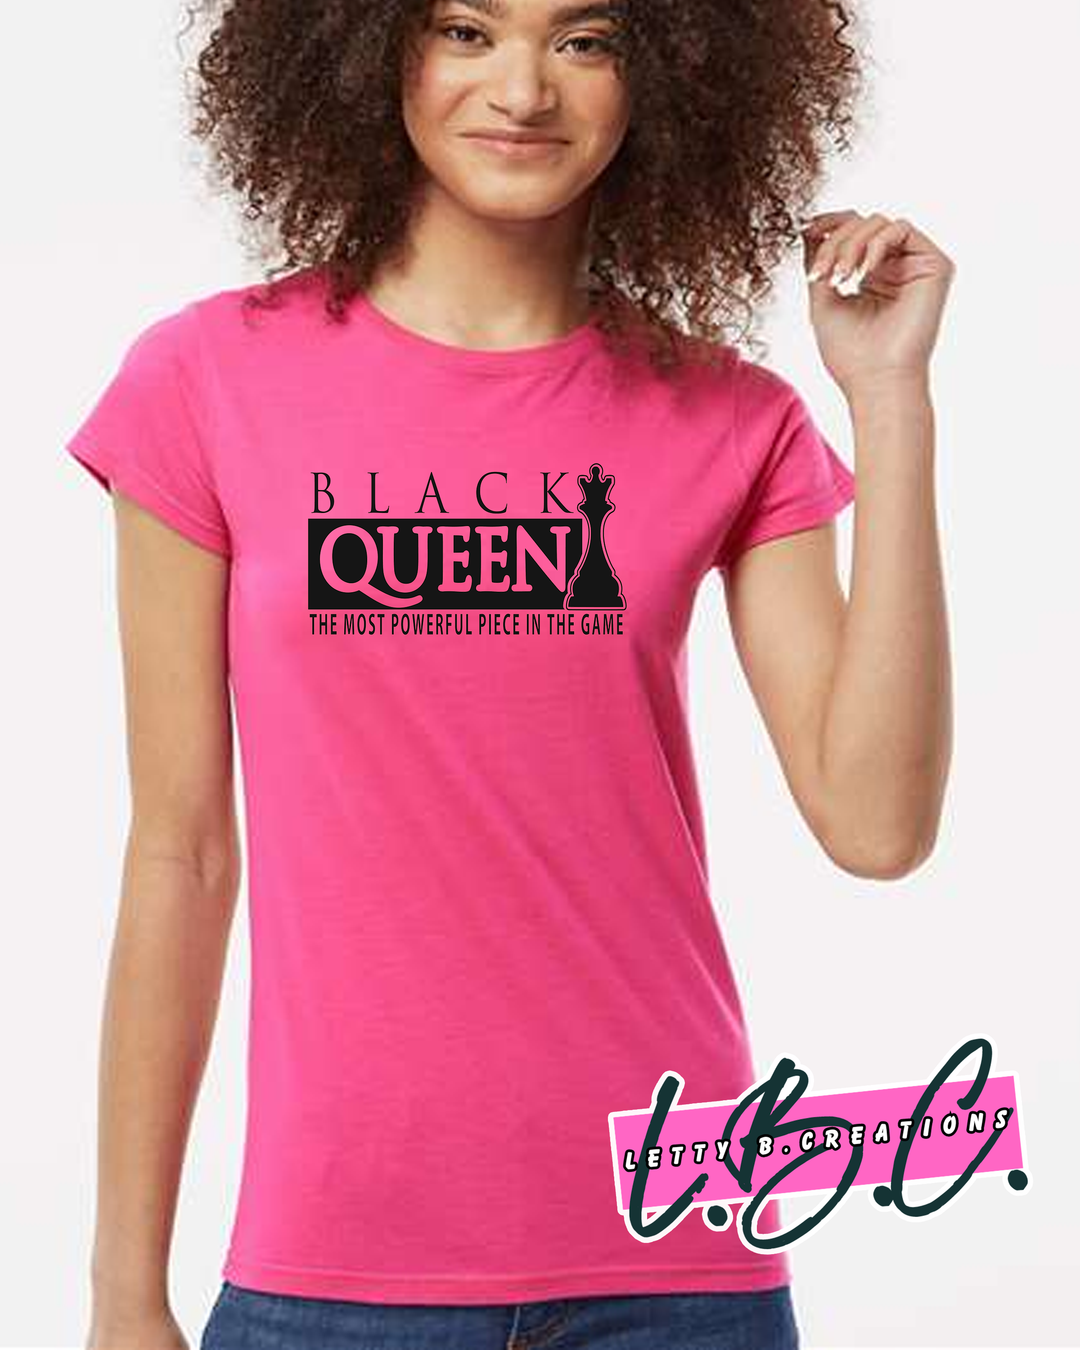 Black Queen short sleeve ladies t-shirt